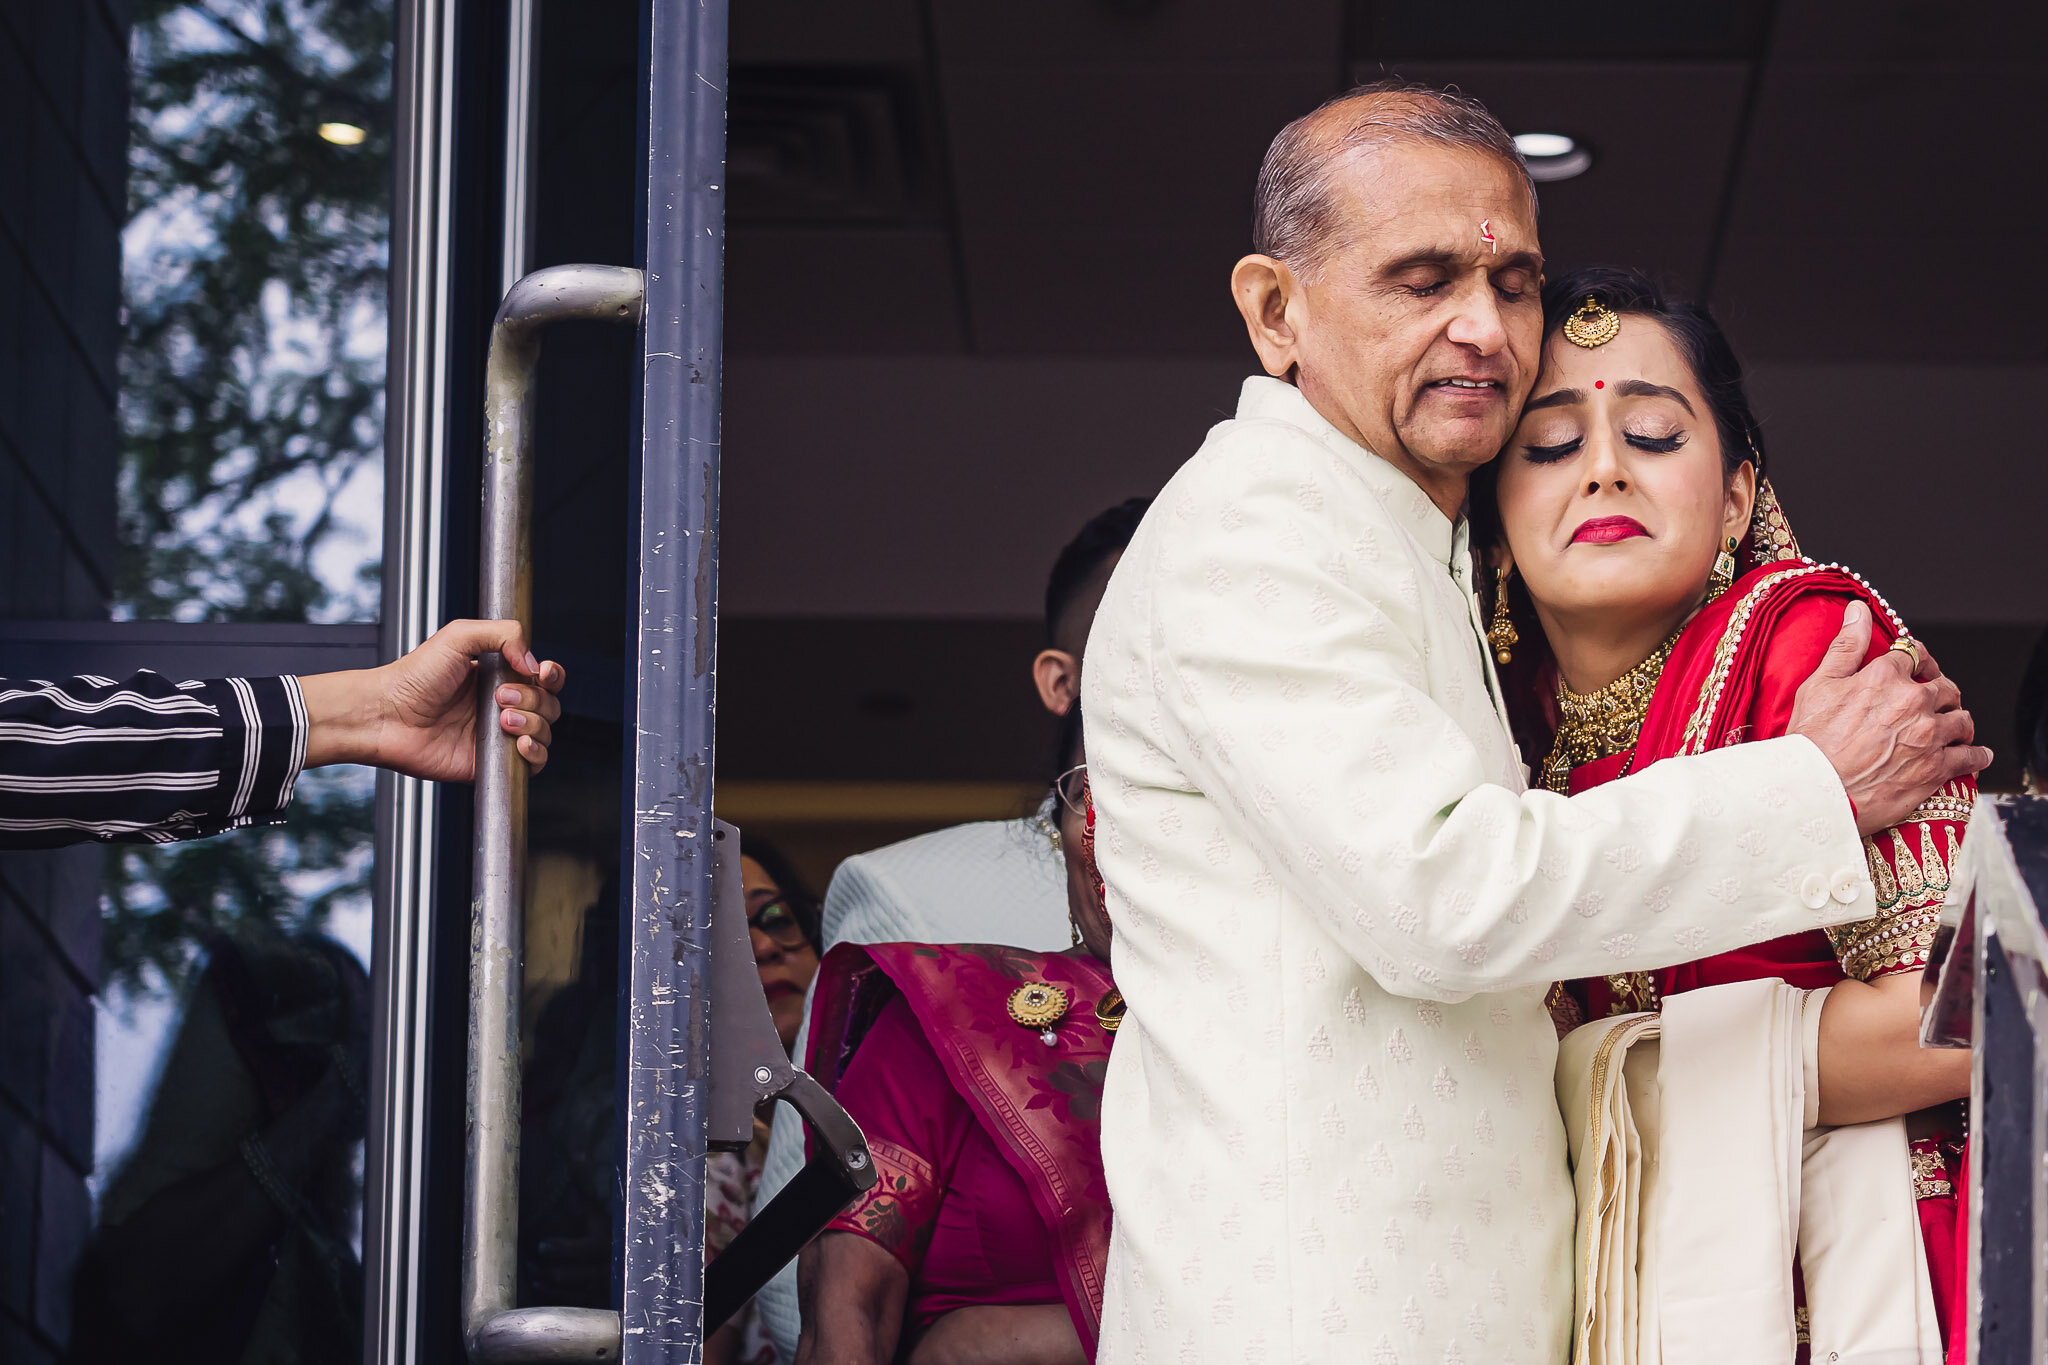 Sheraton Mahwah Hotel Indian wedding